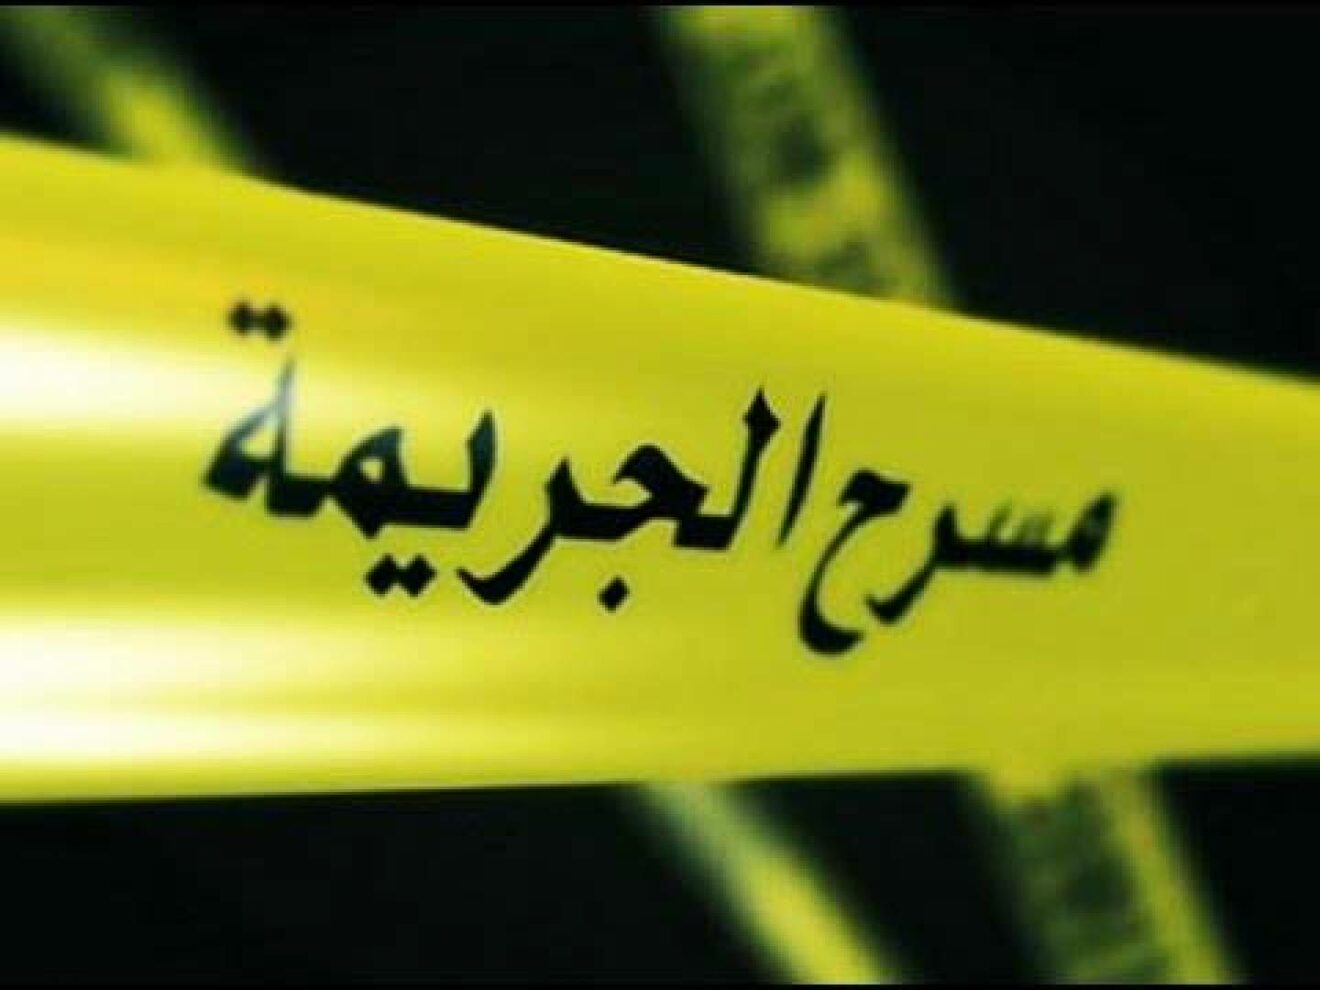 مصري يقتل آخر بعدة طعنات نافذة باستخدام مقص.. لسبب لا يخطر على بال